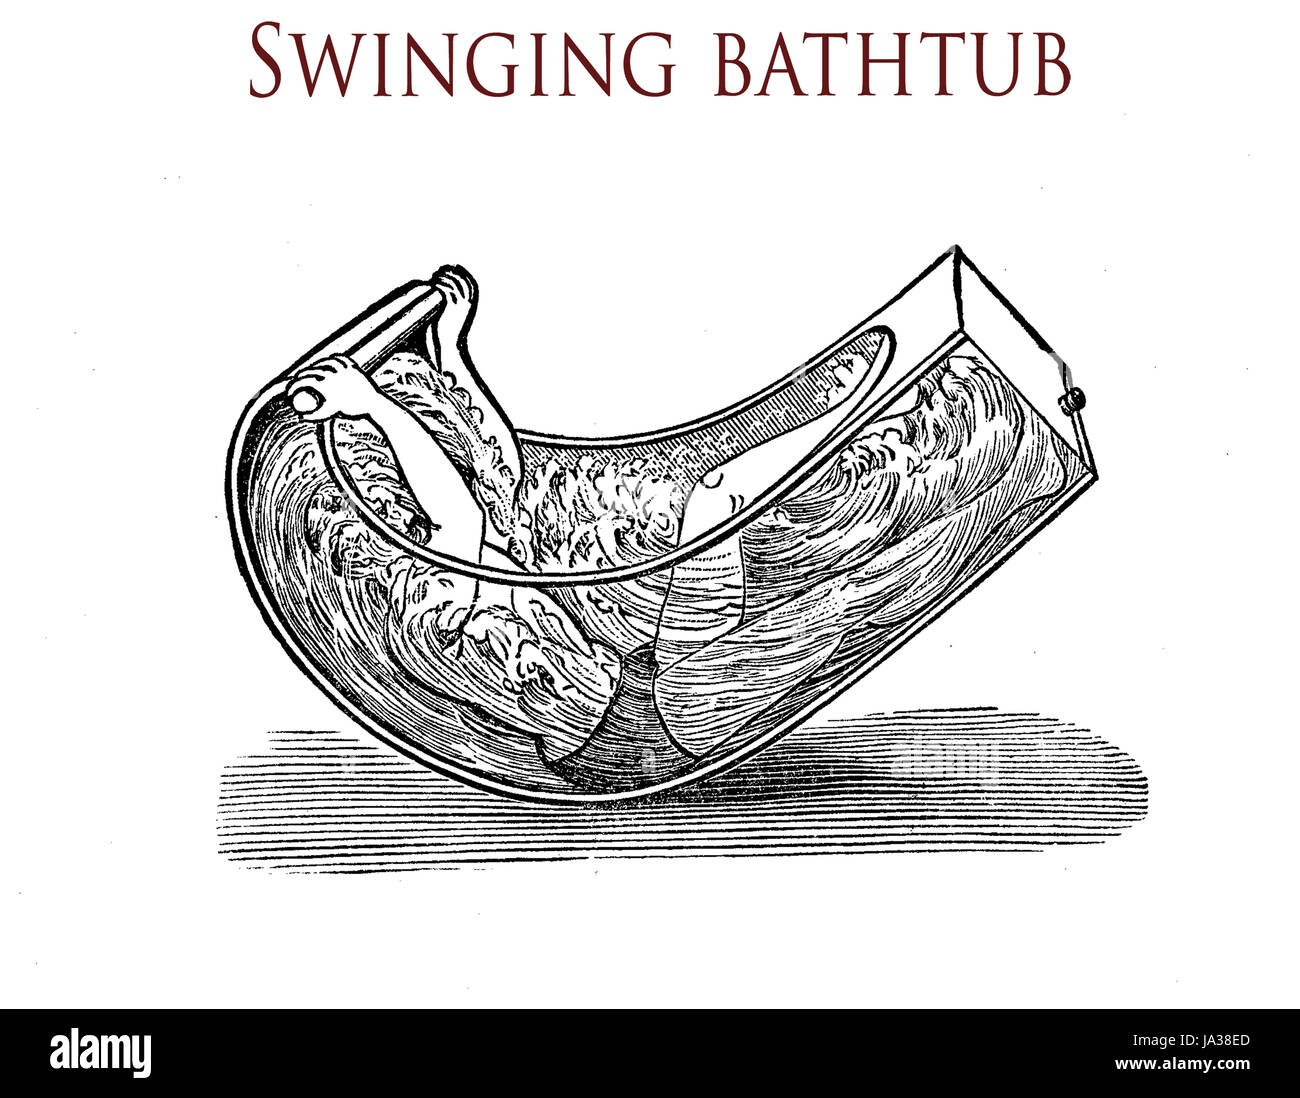 Schwingende Badewanne zum Wellenbad, Vintage illustration Stockfoto